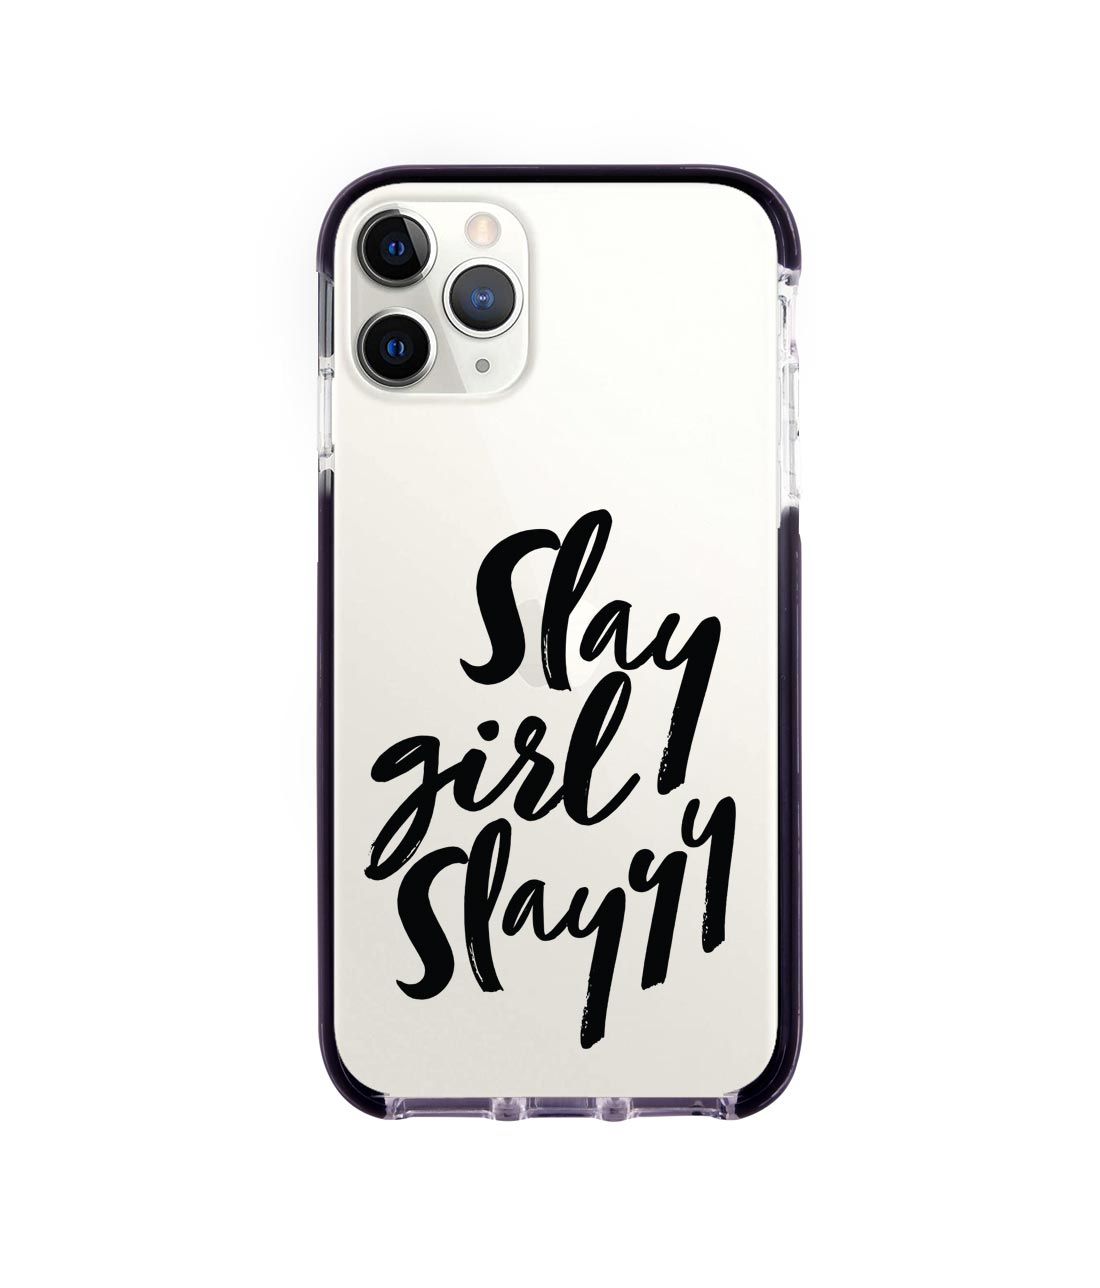 Slay girl Slay - Extreme Phone Case for iPhone 11 Pro